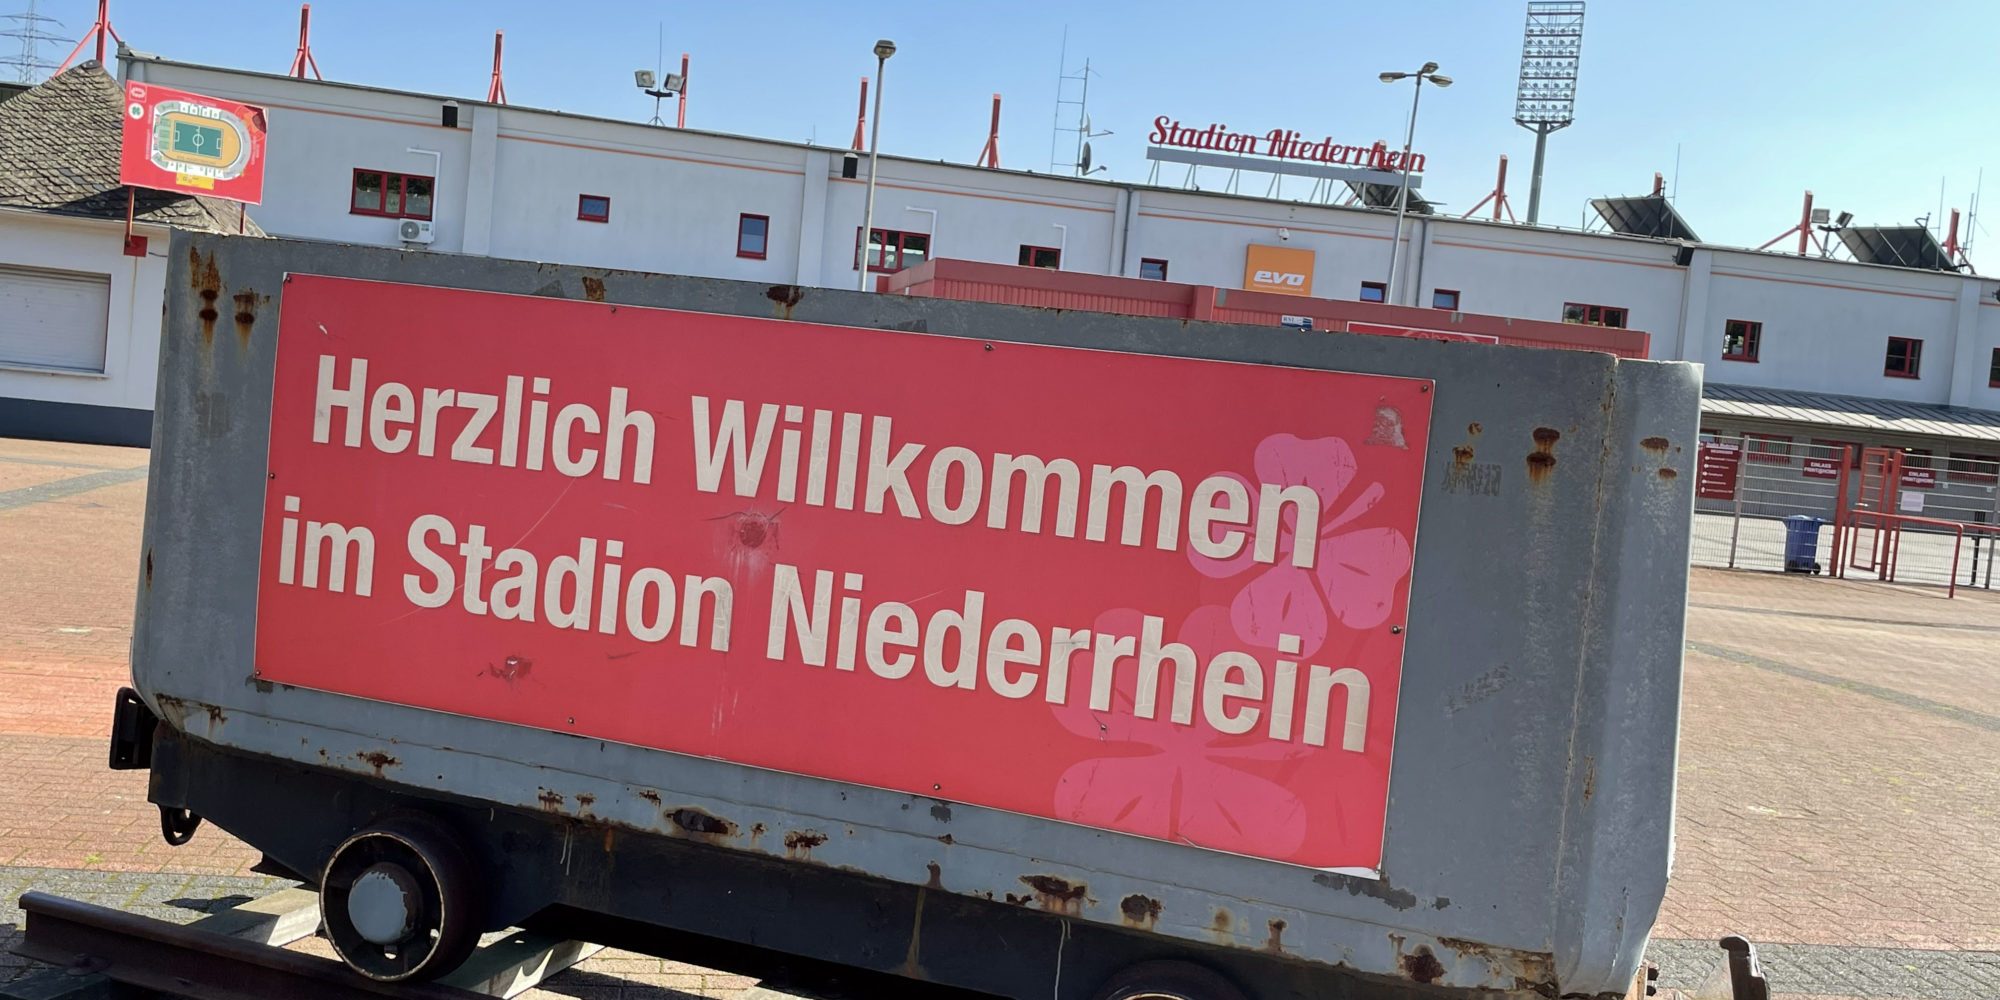 Das Bild zeigt einen Grubenwagen vor dem Stadion Niederrhein in Oberhausen